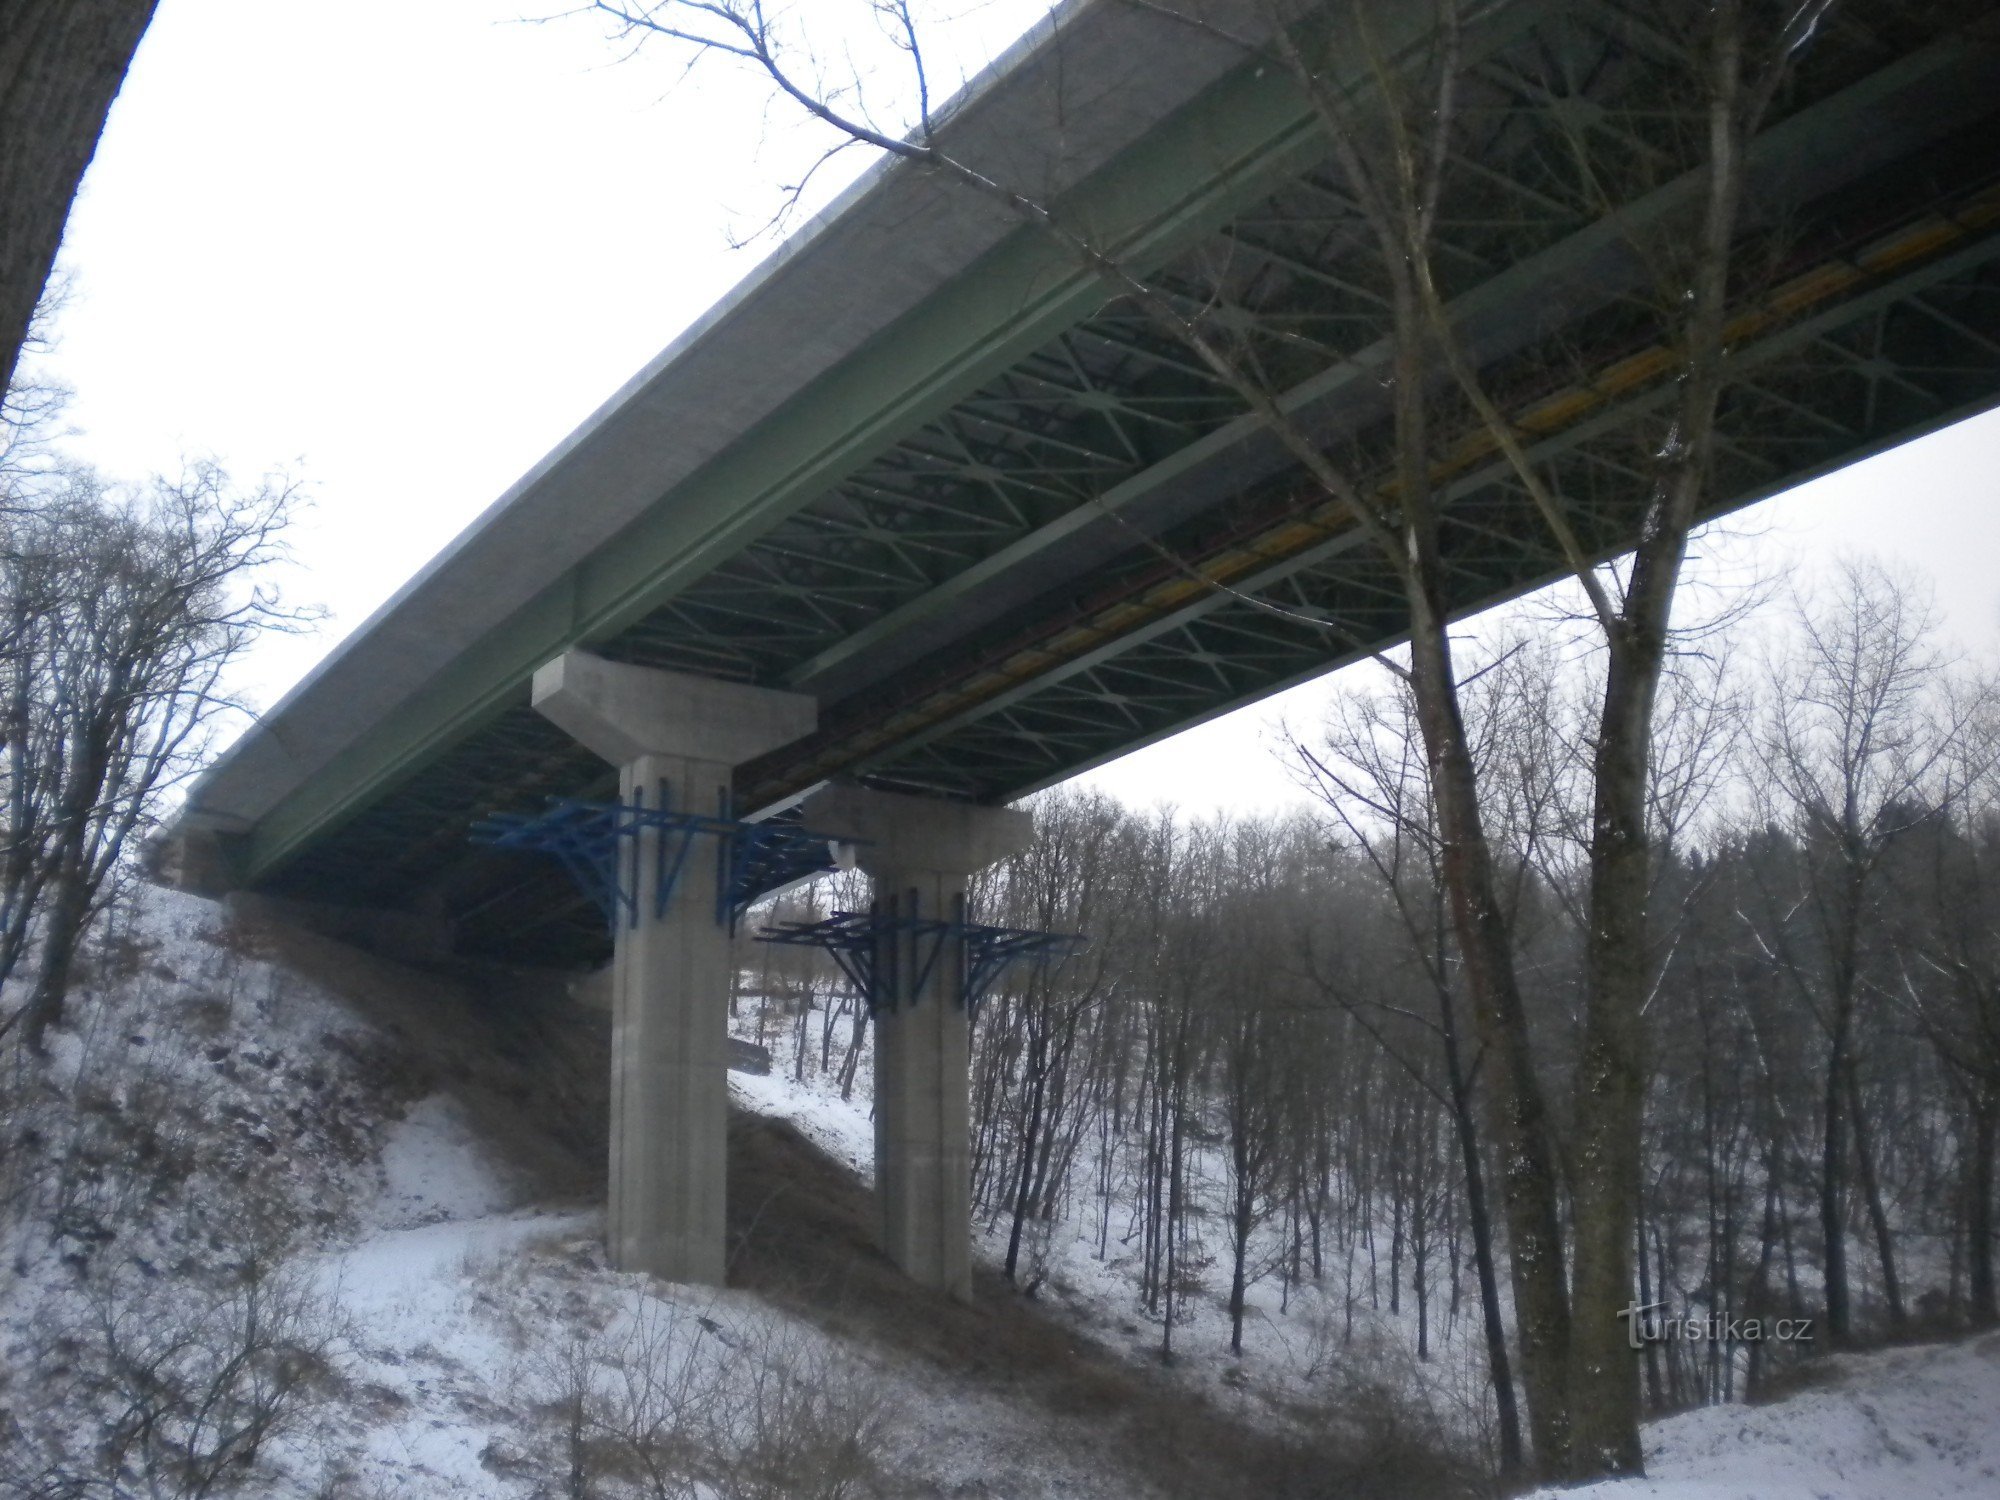 一座横跨山谷的小型公路桥。